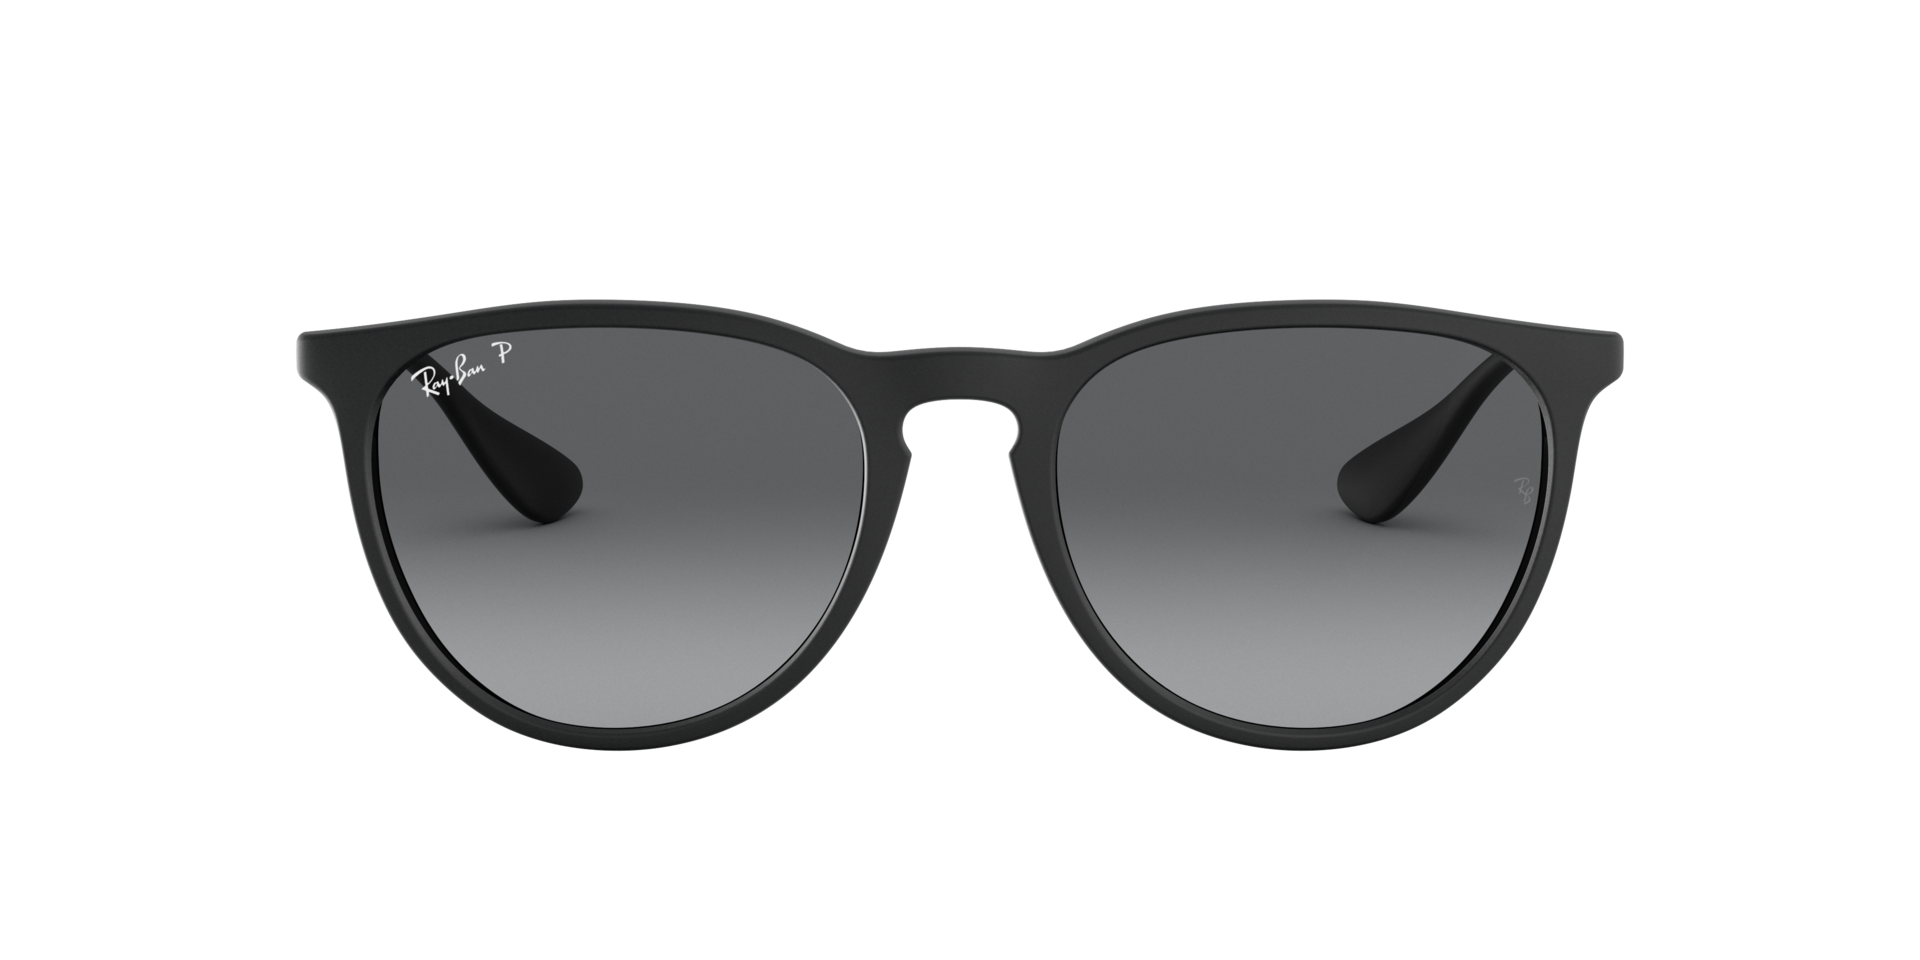 Ray Ban Sonnenbrille für Damen in Rubber Black & Rund ERIKA RB4171 622/T3 54